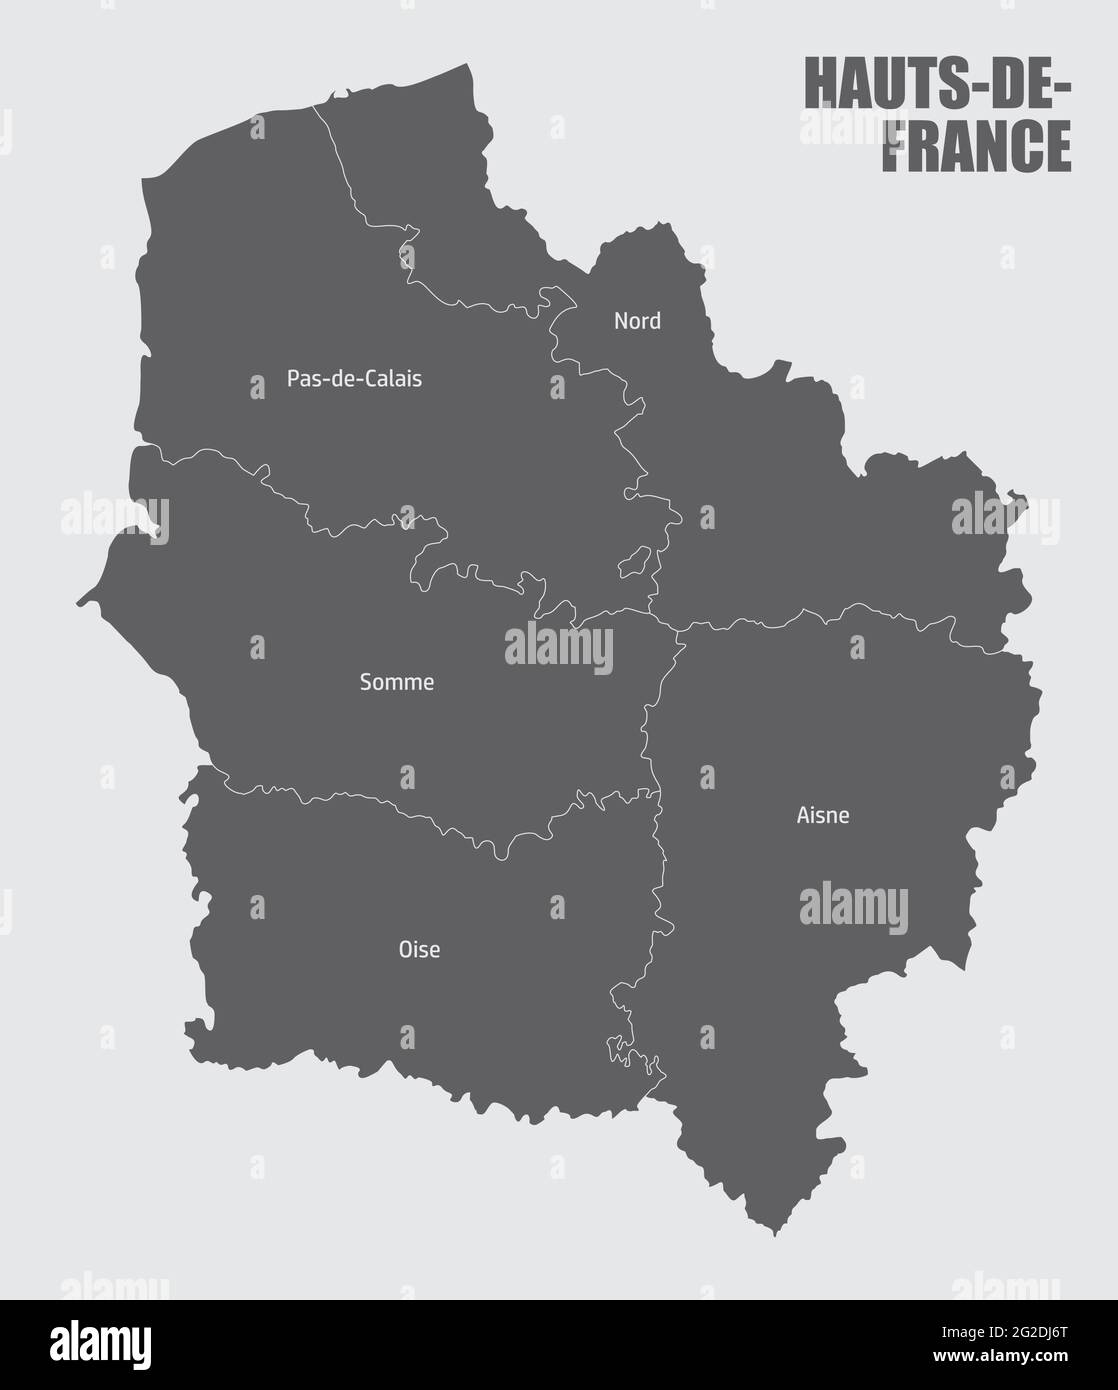 Carte administrative des hauts-de-France divisée en départements avec labels, France Illustration de Vecteur